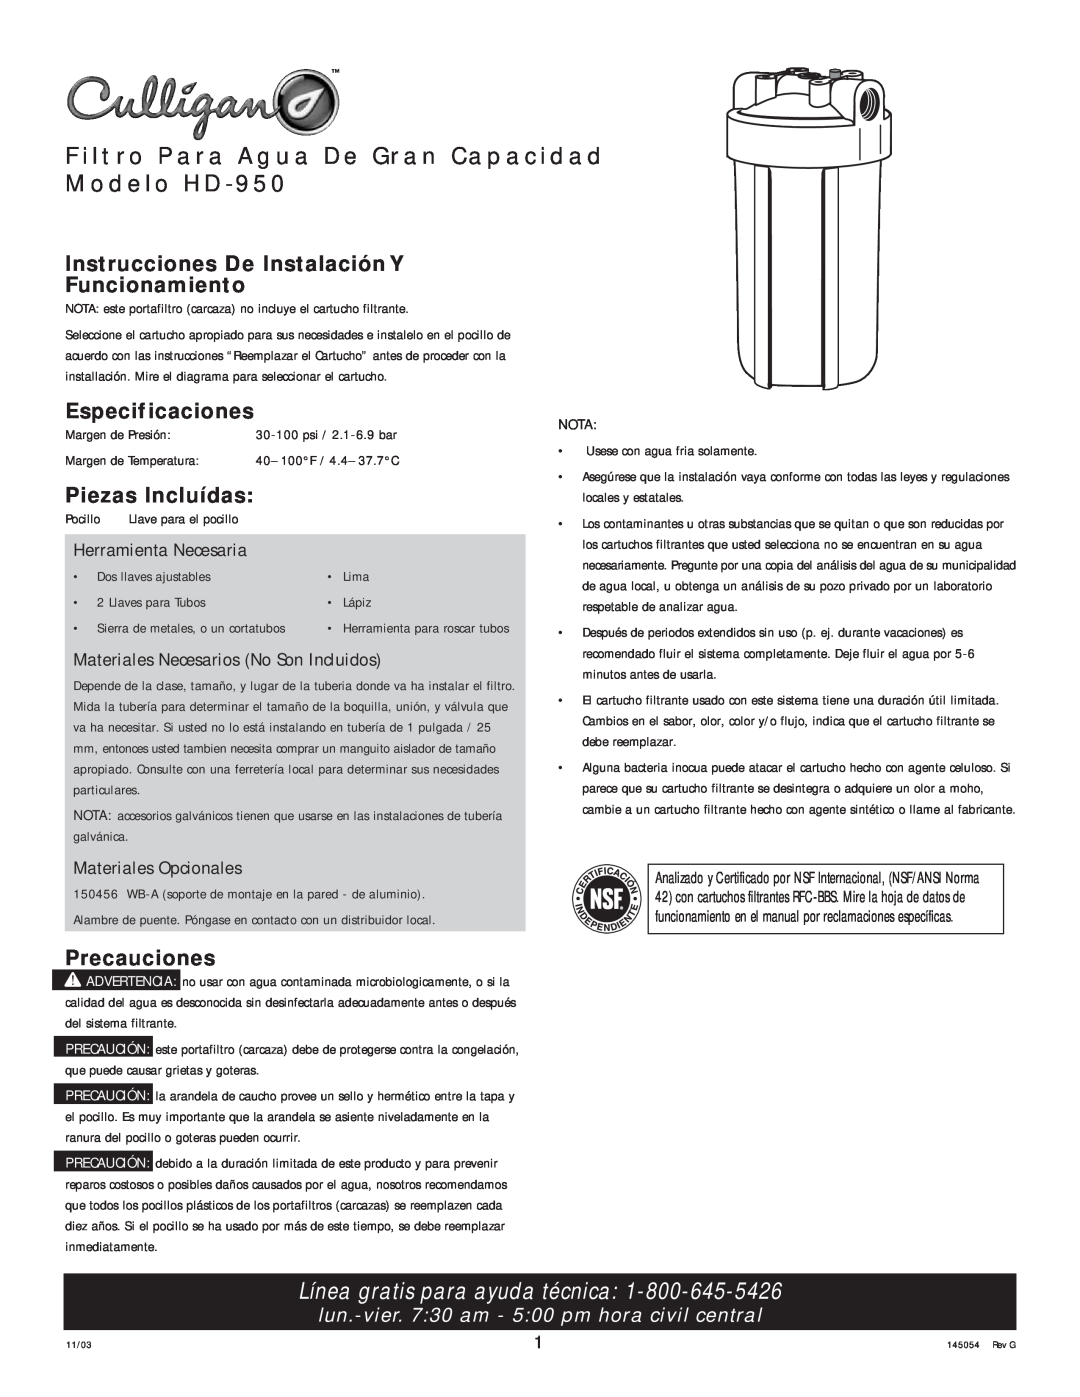 Kenmore Filtro Para Agua De Gran Capacidad Modelo HD-950, Instrucciones De Instalación Y Funcionamiento, Precauciones 